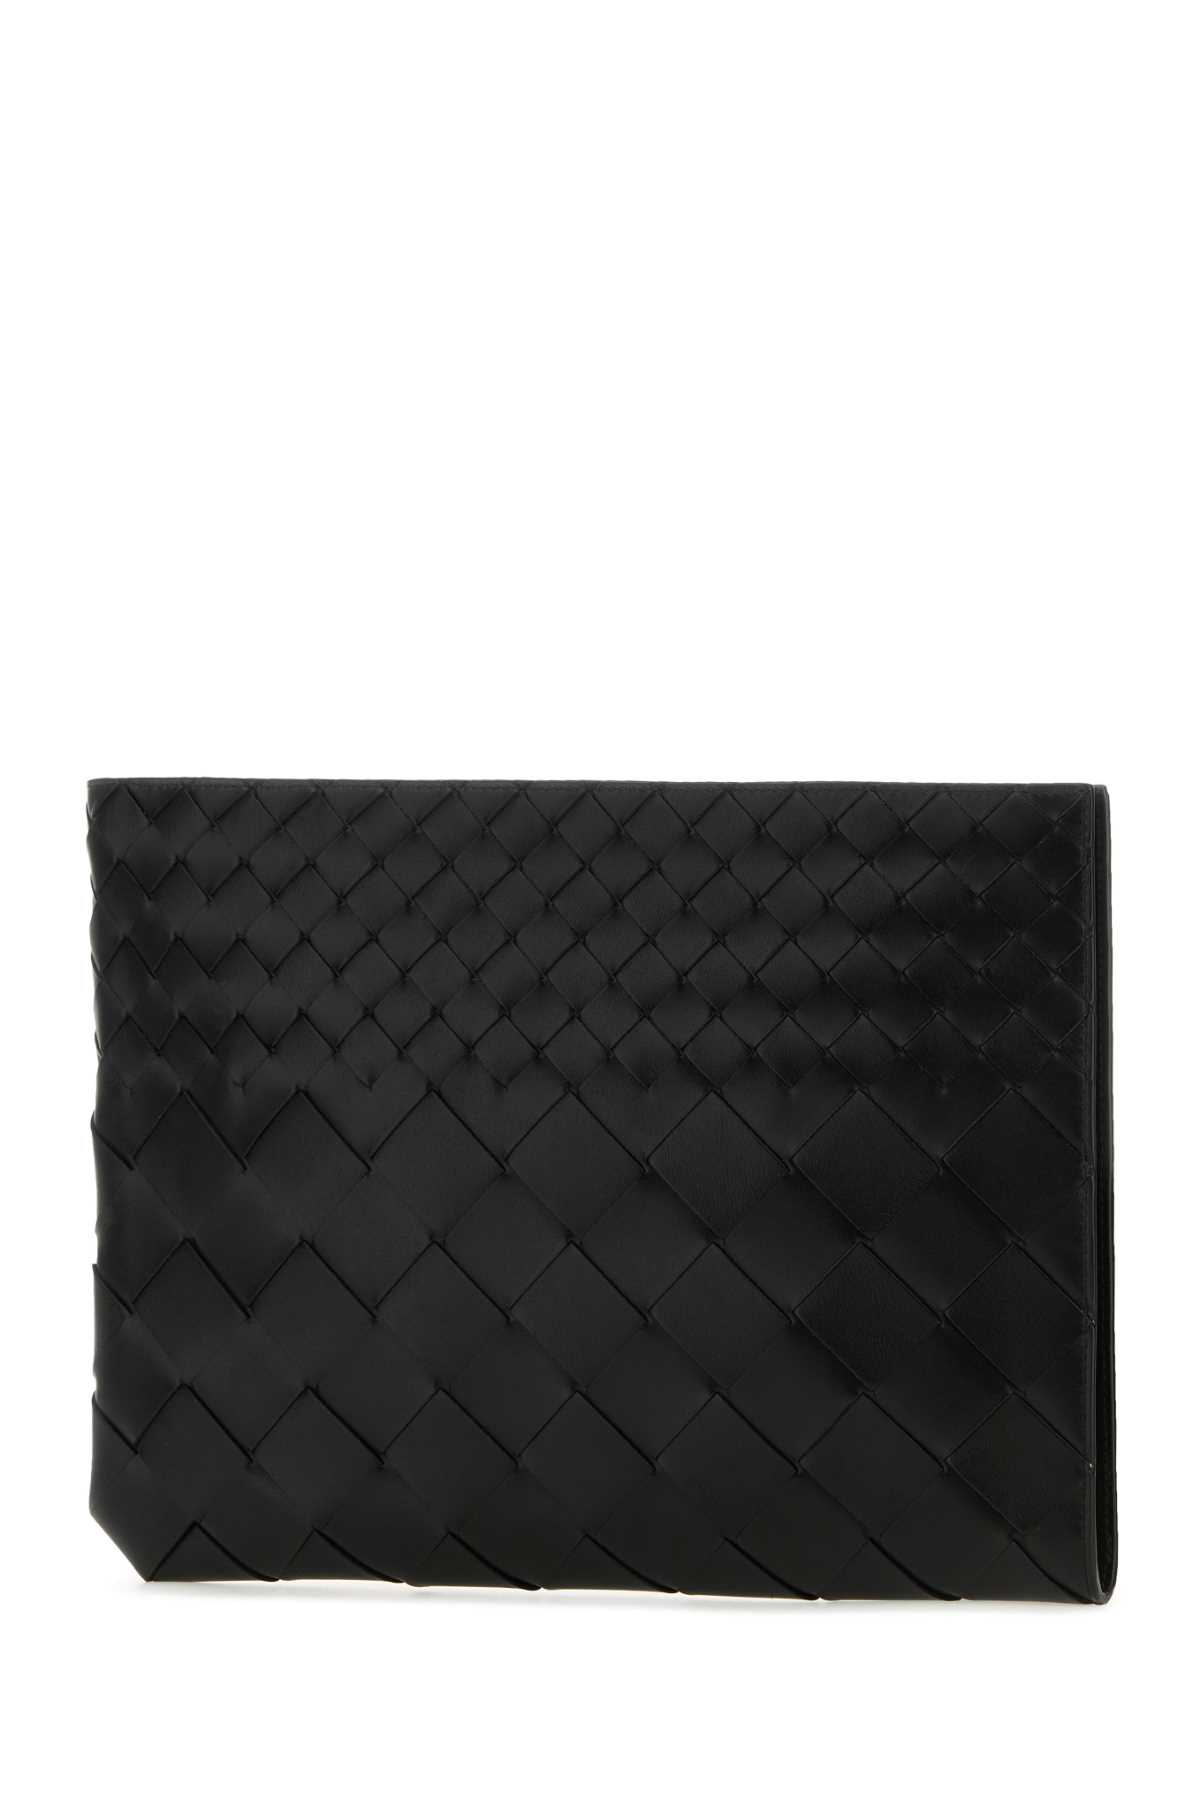 Bottega Veneta Black Leather Intrecciato Pouch In Blk